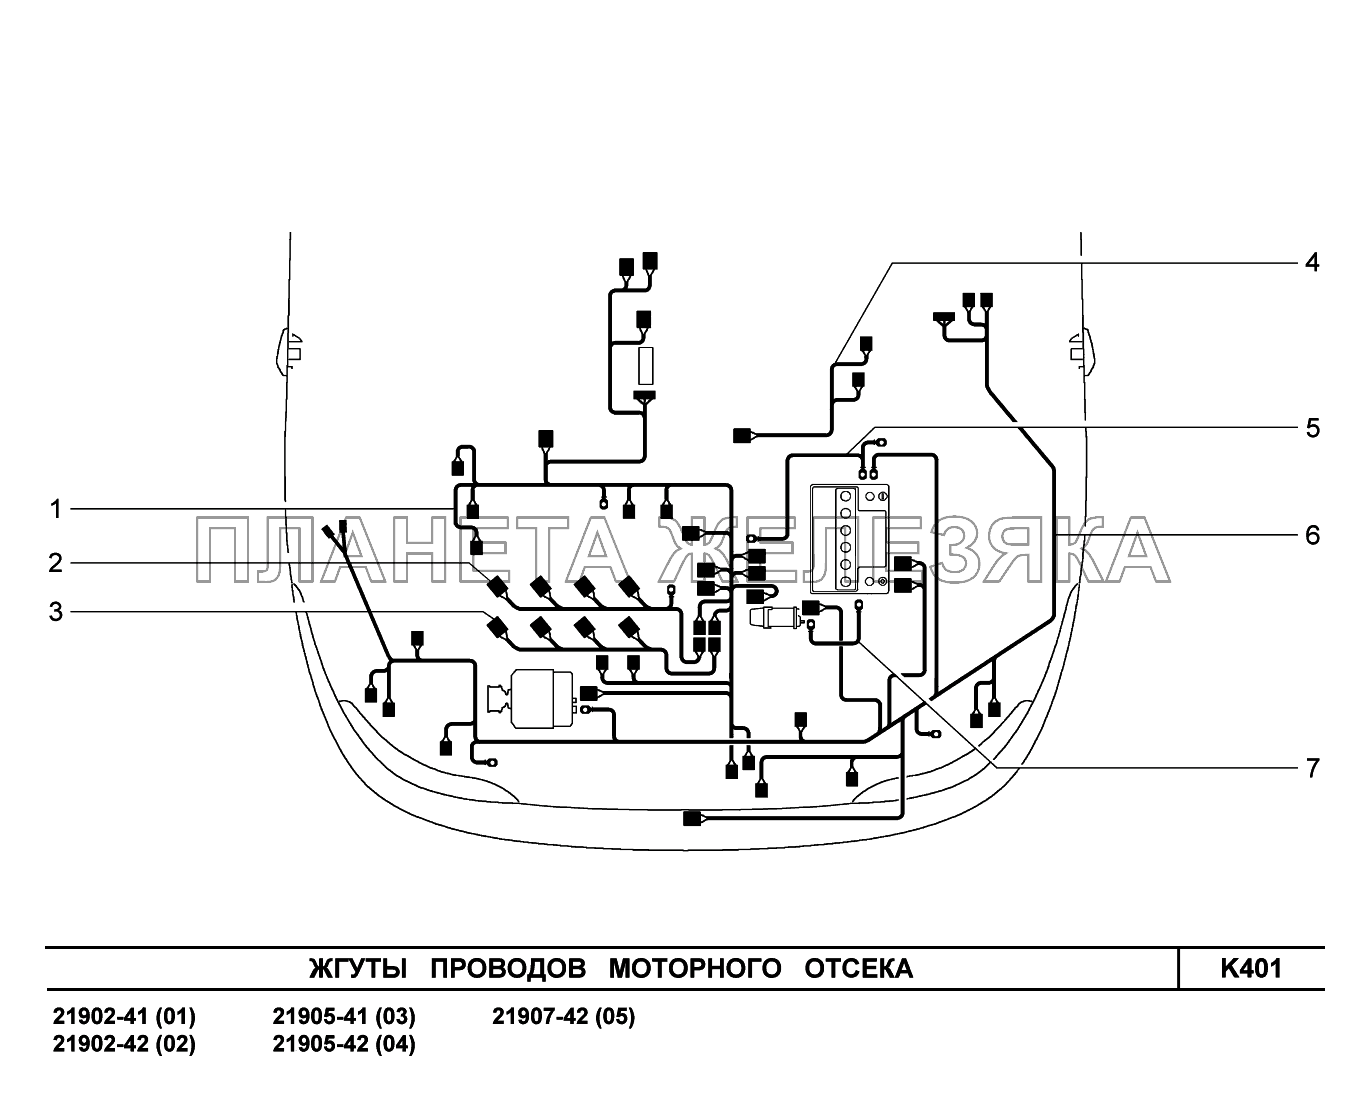 K401. Жгуты проводов моторного отсека Lada Granta-2190